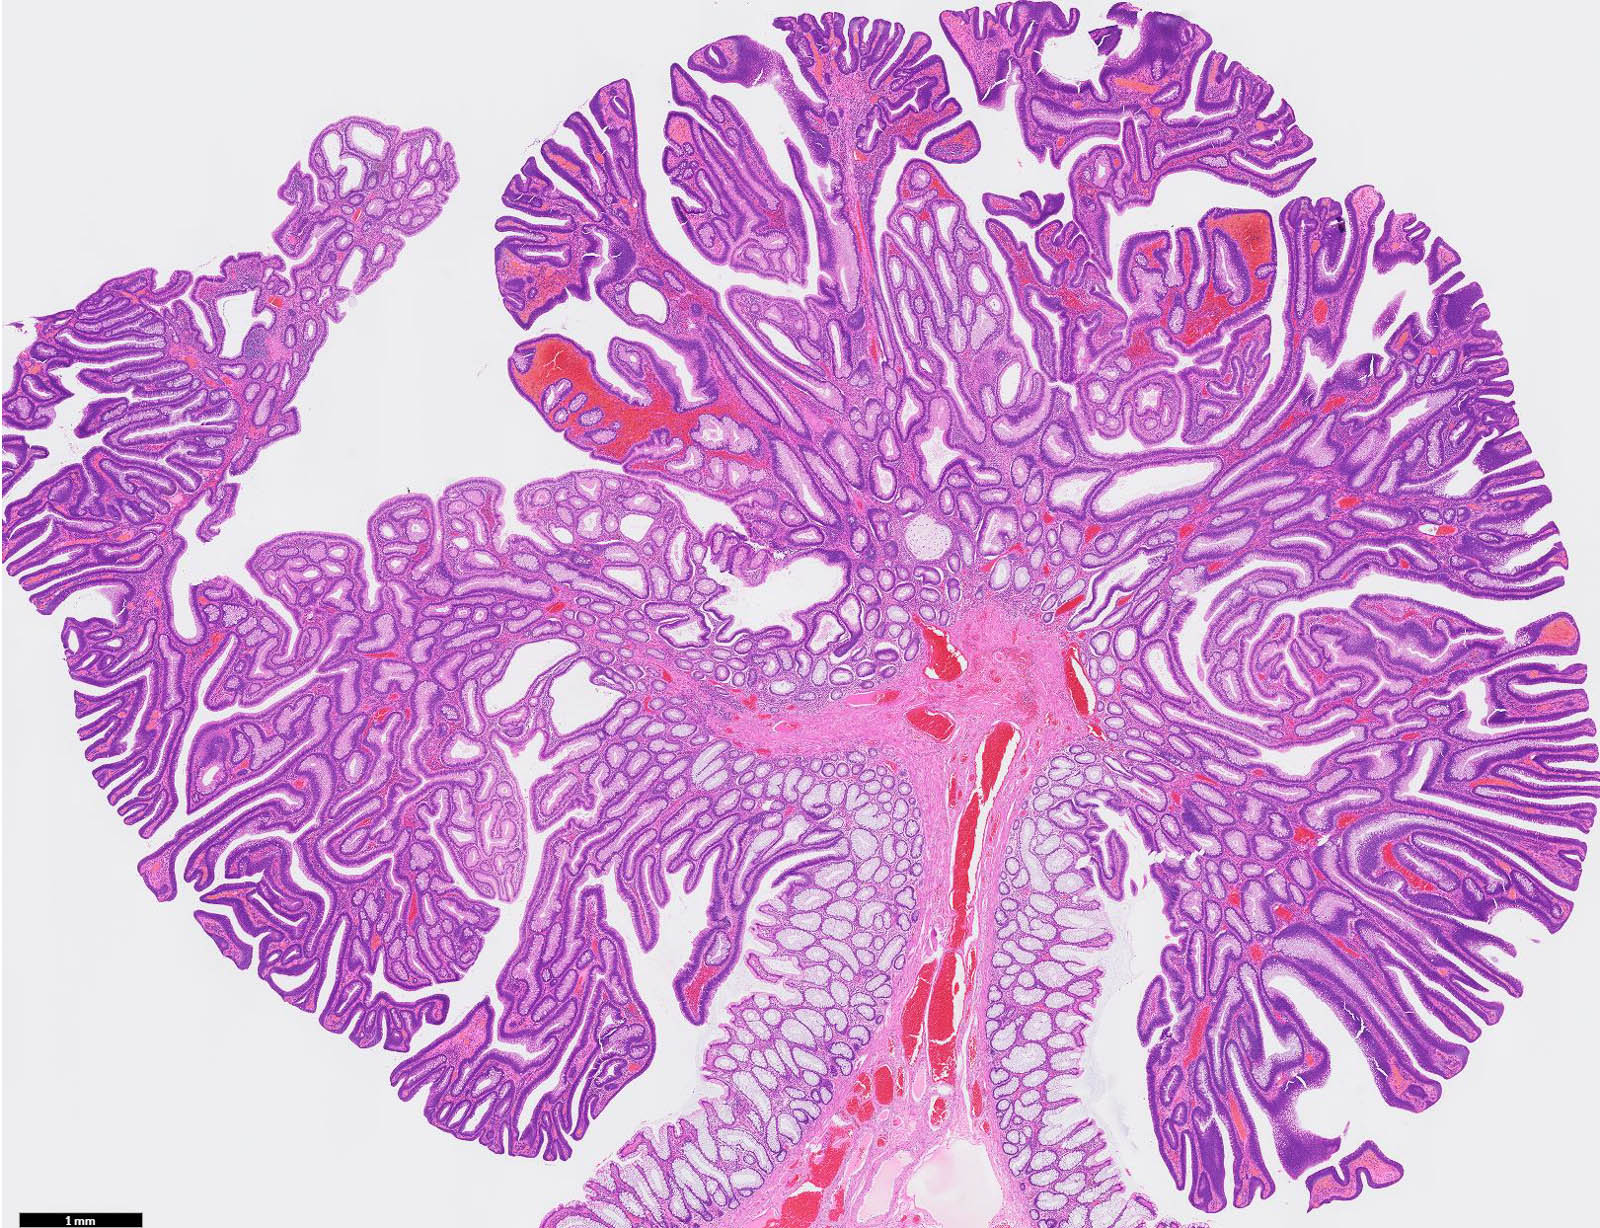 Pathology Outlines - Tubular adenoma